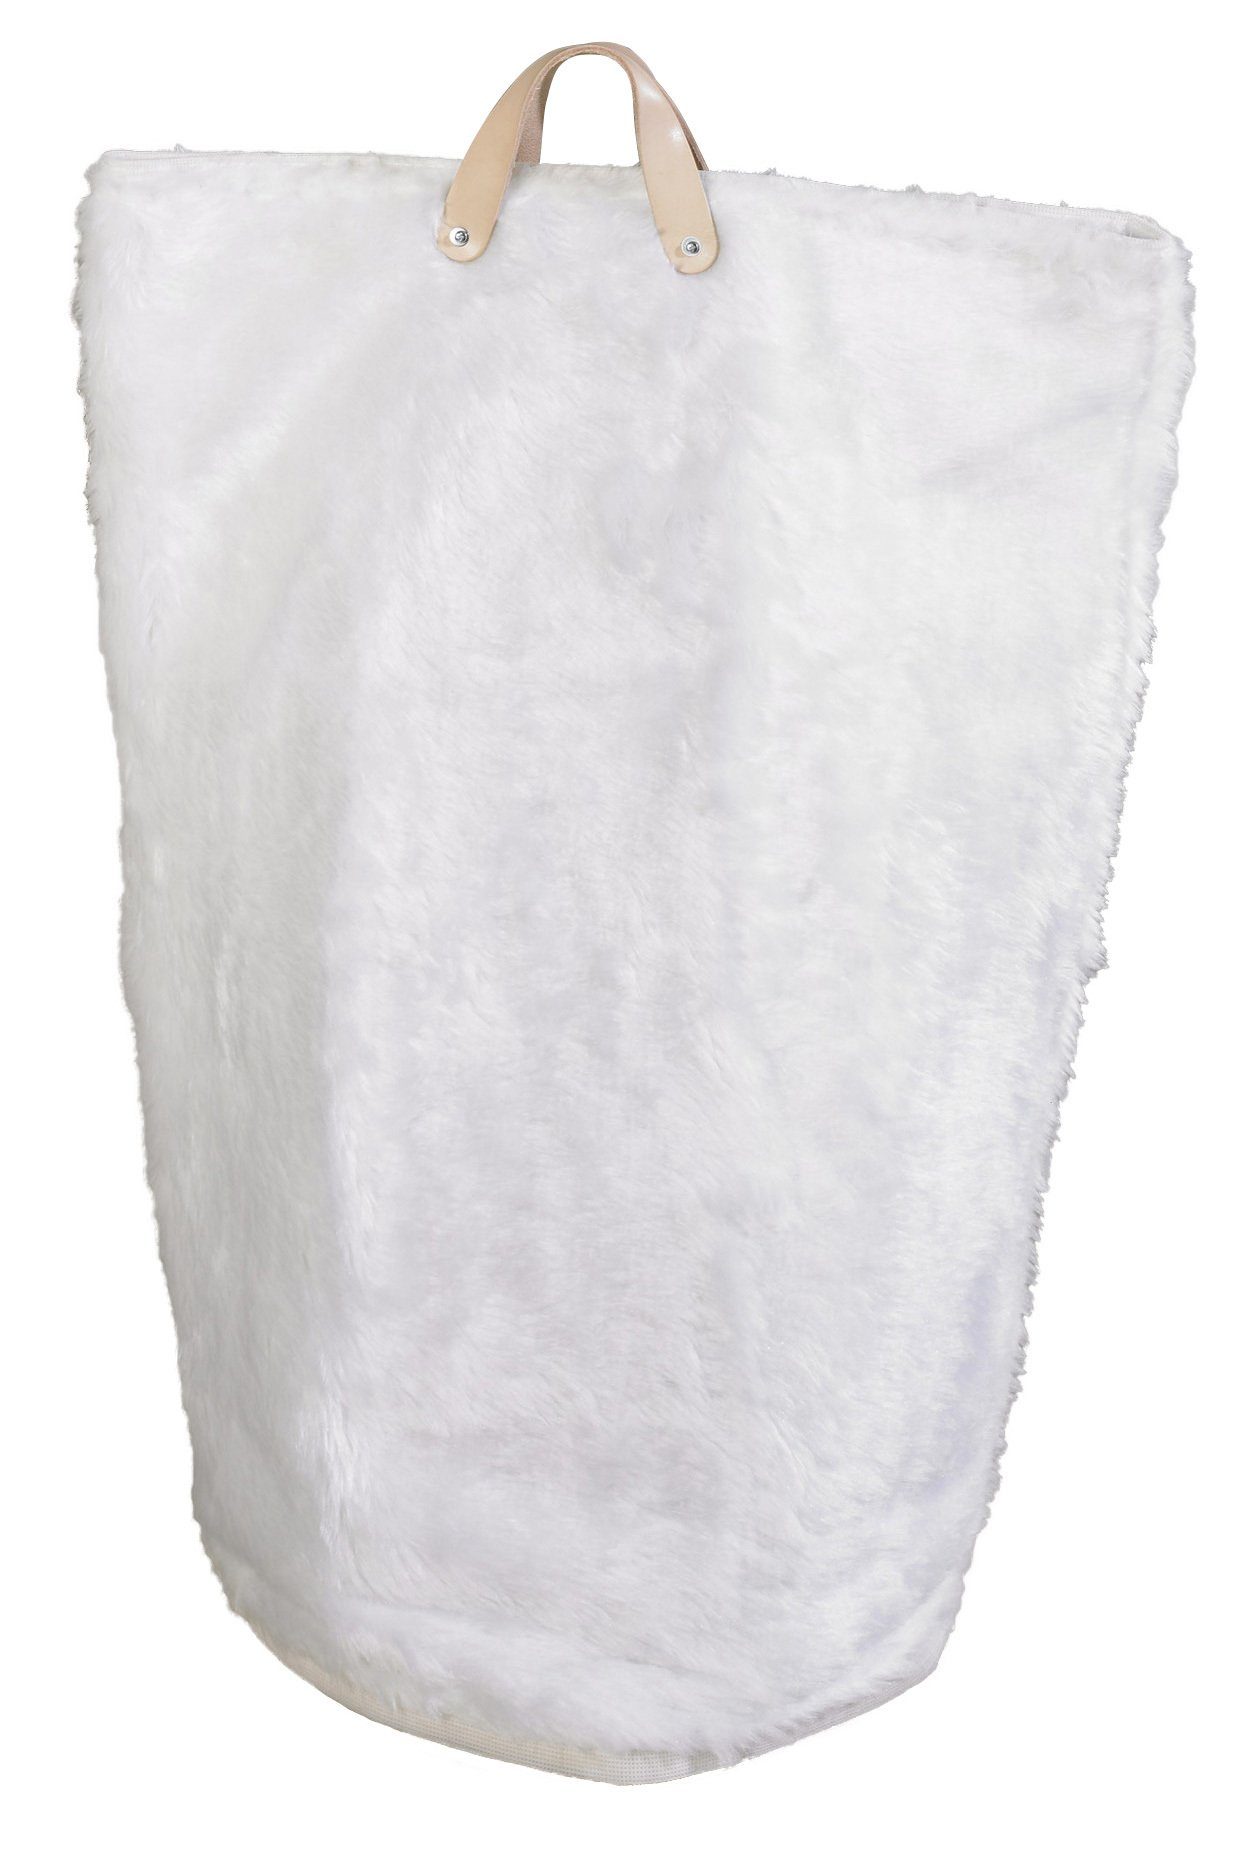 ARTRA Wäschetasche (1 Wäschesammler Multifunktionstasche Wäschetaschen Weiß Wäschebeutel, "Maja" in Wäschekorb und St), Wäschesack, Bad Fellimitat